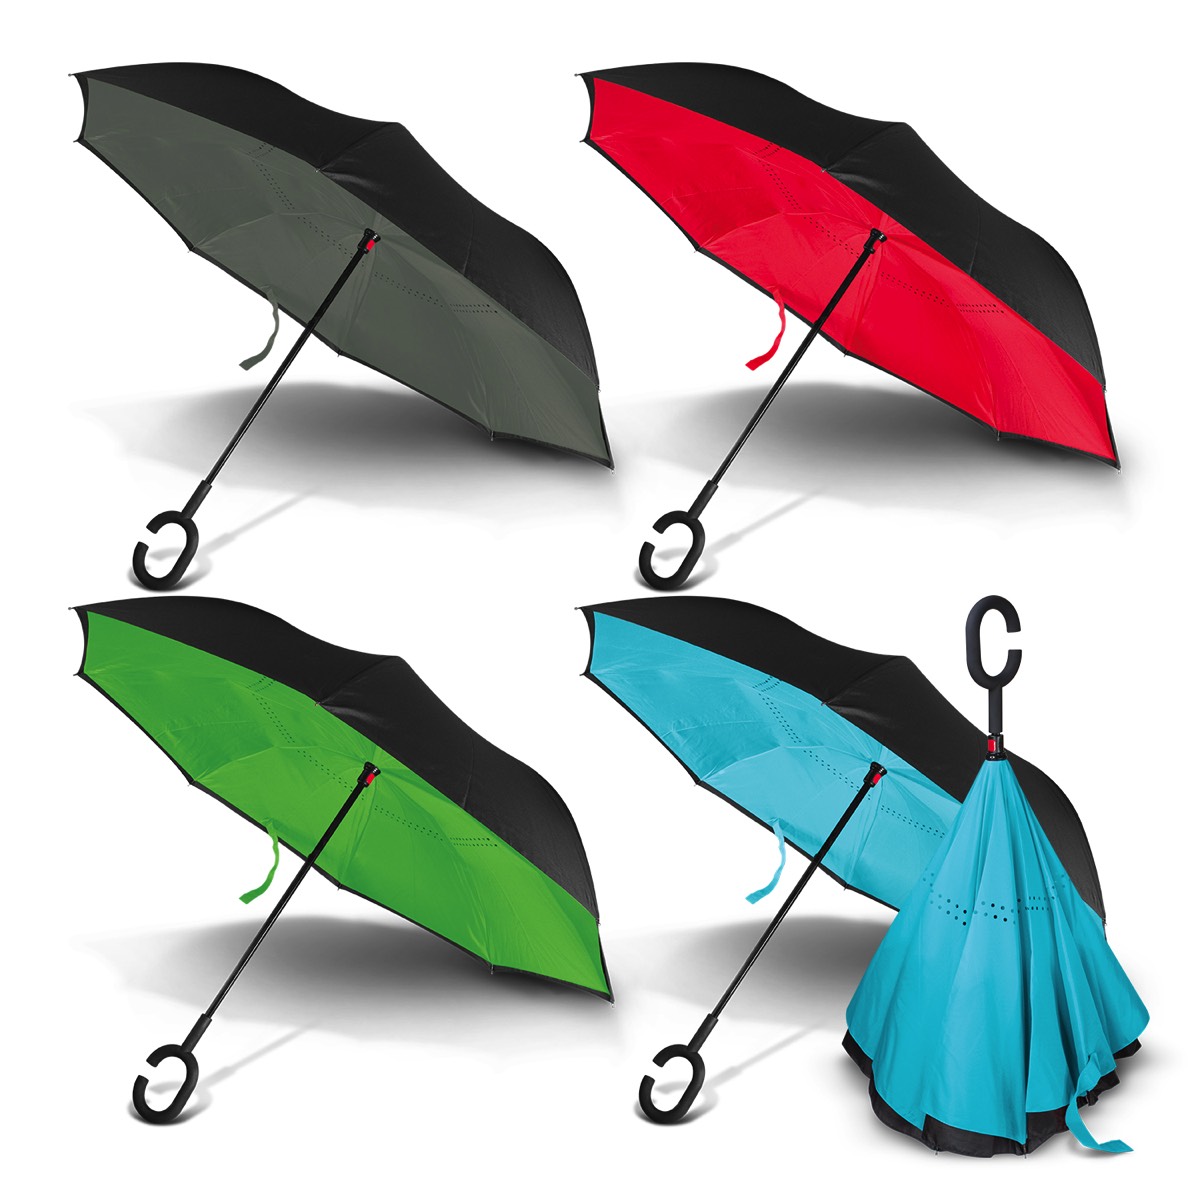 elevate stylish and fashionable umbrella